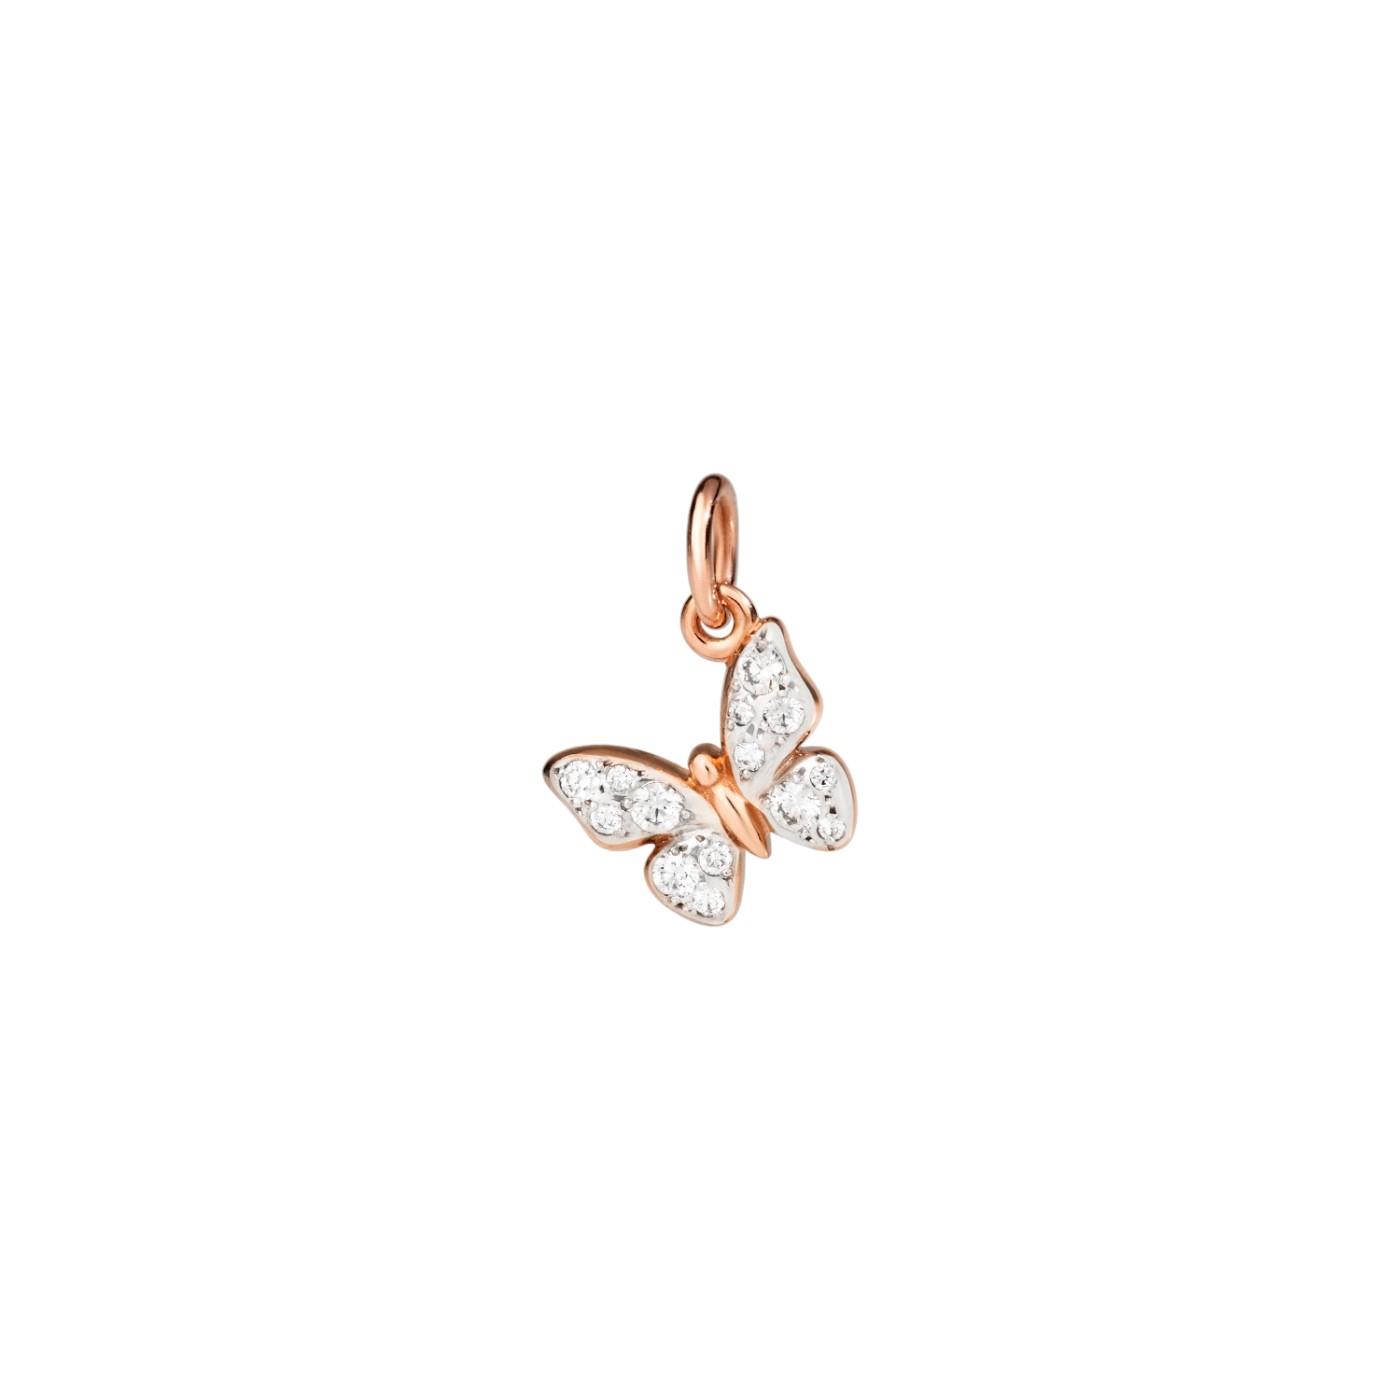 Anhänger Schmetterling Diamanten Rosegold - Dodo - DMC2016BFLYSDB09R